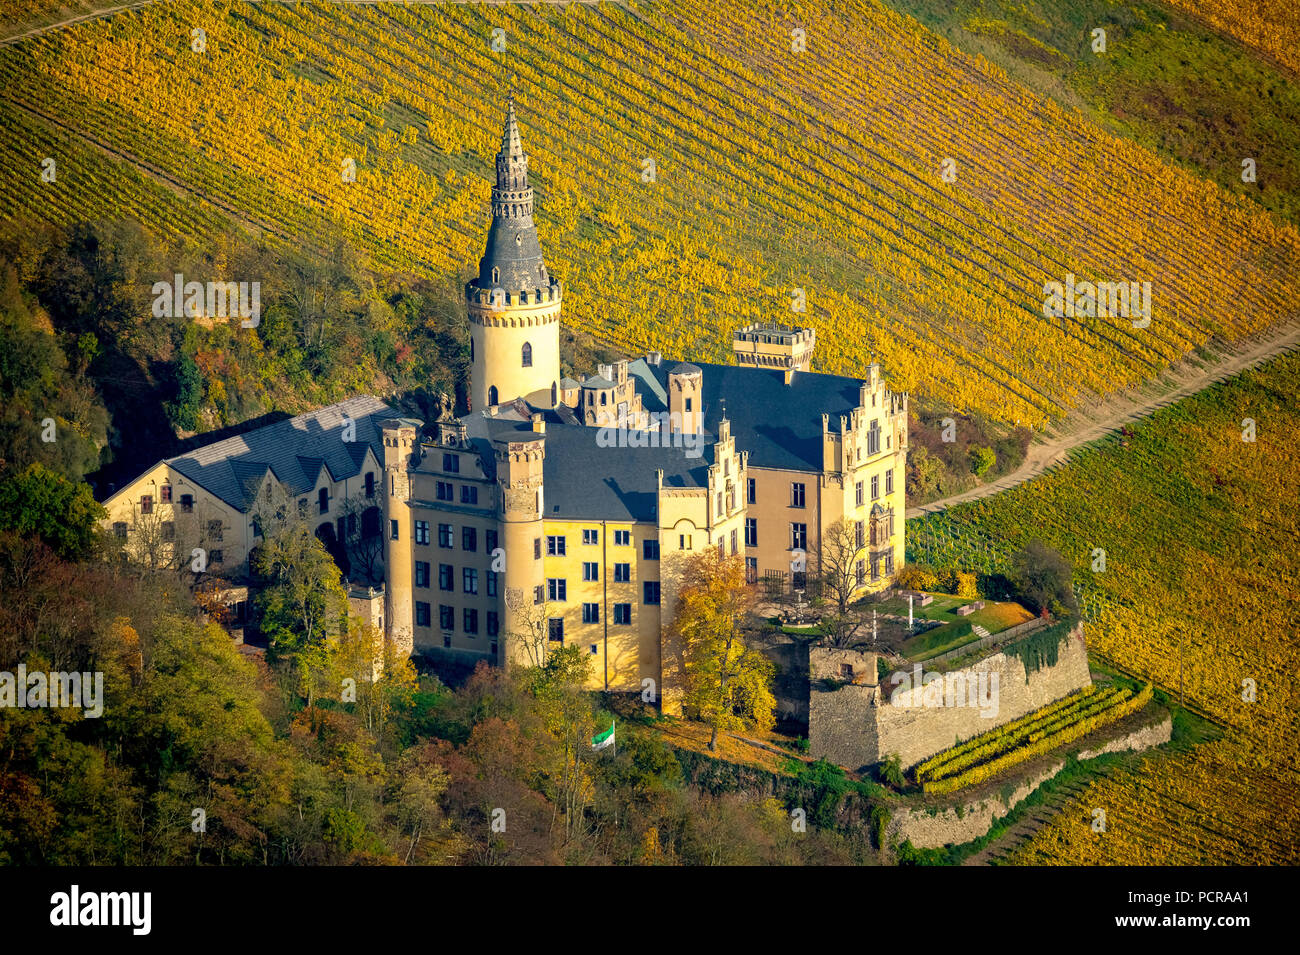 Vineyards in autumn, vine leaves, Spätlese, Schloss Arensfels, owned by Baron Antonius Geyr von Schweppenburg, Bad Breisig, Neuwied district, Rhineland-Palatinate, Germany Stock Photo